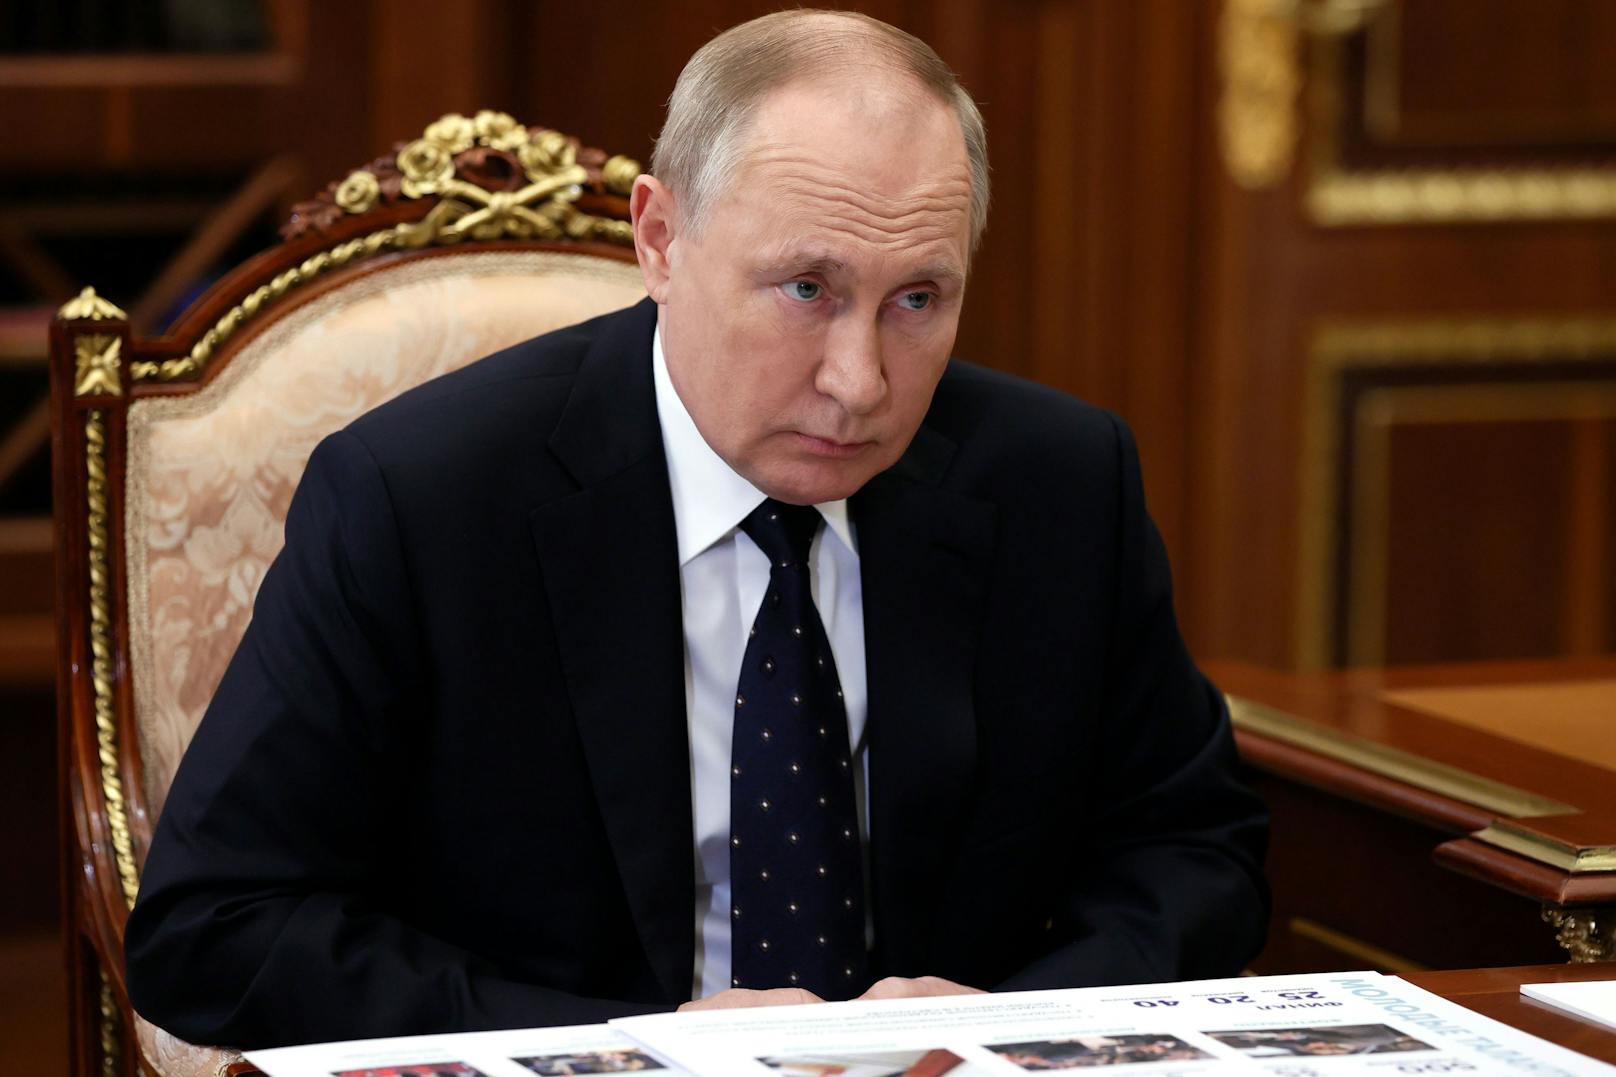 Plant der russische Präsident die Militäreskalatrion? Die Gefahr ist real, so die Experten.